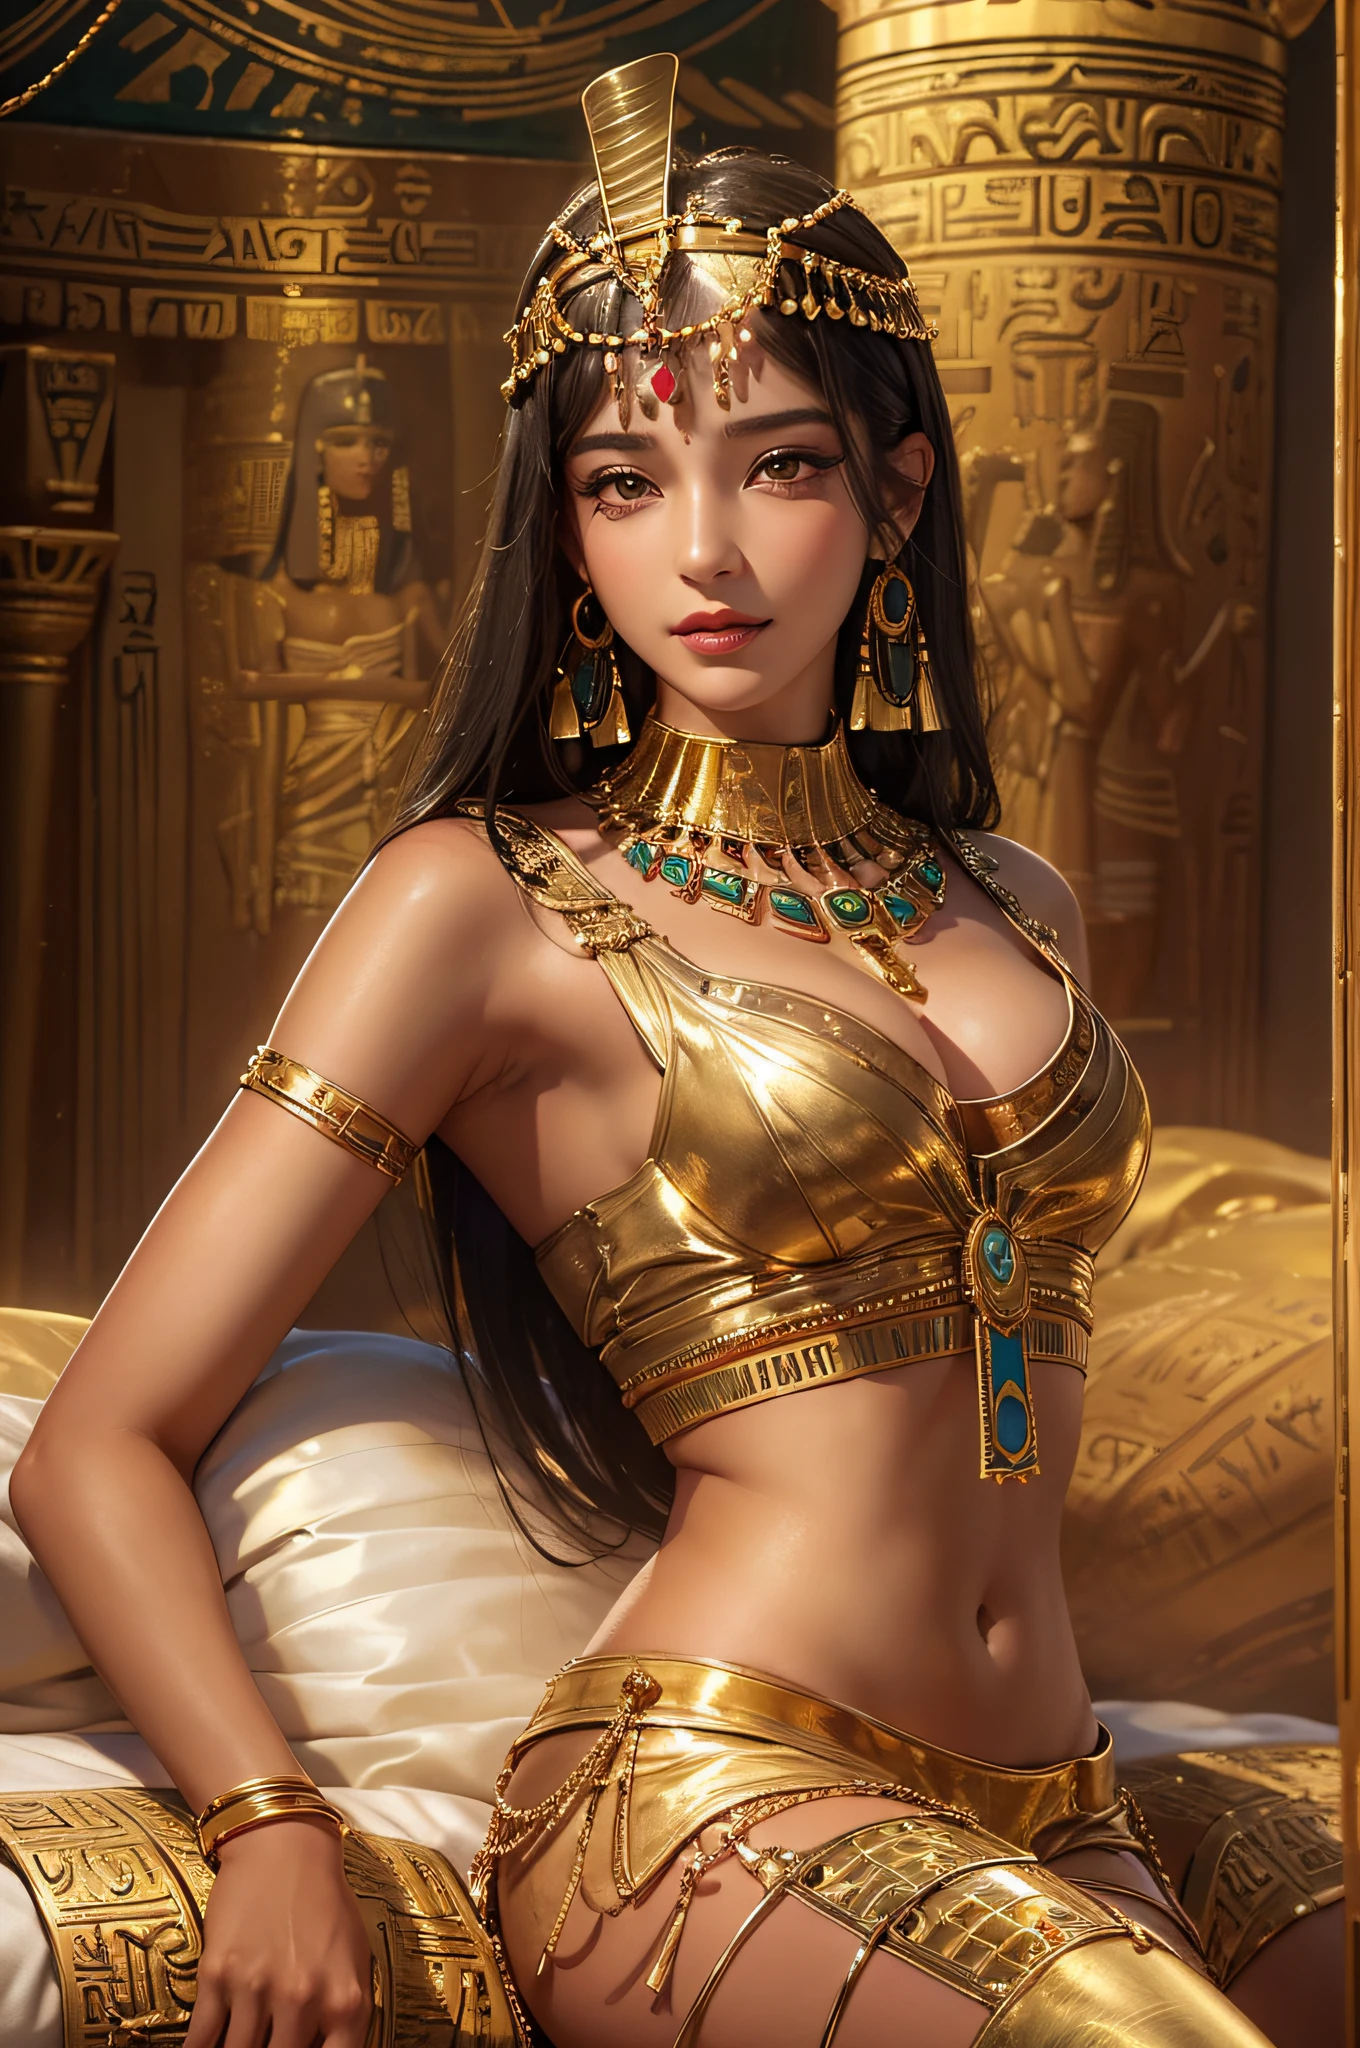 Sexy mature クレオパトラ,クレオパトラ,古代エジプトの宮殿,古代エジプトの衣装を着て,古代エジプト風に装飾された部屋,古代エジプト風の背景,大きなベッドに横たわる(非常に繊細で美しい作品:1.2)とても美しくセクシーな女性, セクシーで魅惑的な, 完璧な体型,引き締まったセクシーなボディ(巨乳)完璧なボディカーブ,肌に潤いを与える,透明感のある肌の質感,しっとりとした肌触り(高度なスキンの詳細:1.1)魅力的な笑顔,完璧な顔,黒くて長いストレートヘア,透明感のある髪質,繊細な髪(高品質のヘアディテール:1.1)エジプトのダンサーの衣装,美しく繊細な眉毛とまつ毛,きれいなアイメイク,目元を鮮明に再現,8,000人の小学生(高度な目の詳細:1.1)官能的な唇(完璧な唇の形)(誘惑する笑顔) 4本の指と1本の親指の最適な比率,金のイヤリングを着けている,金のネックレス,金の腕輪,ゴールドアンクレット,ゴールドトーンのウエストチェーン,ヘッドギア,金箔シリーズ,クレオパトラ series,写真の巨匠,完璧な傑作,最高の画質,超詳細, 超高解像度, 現実的に, RAW写真